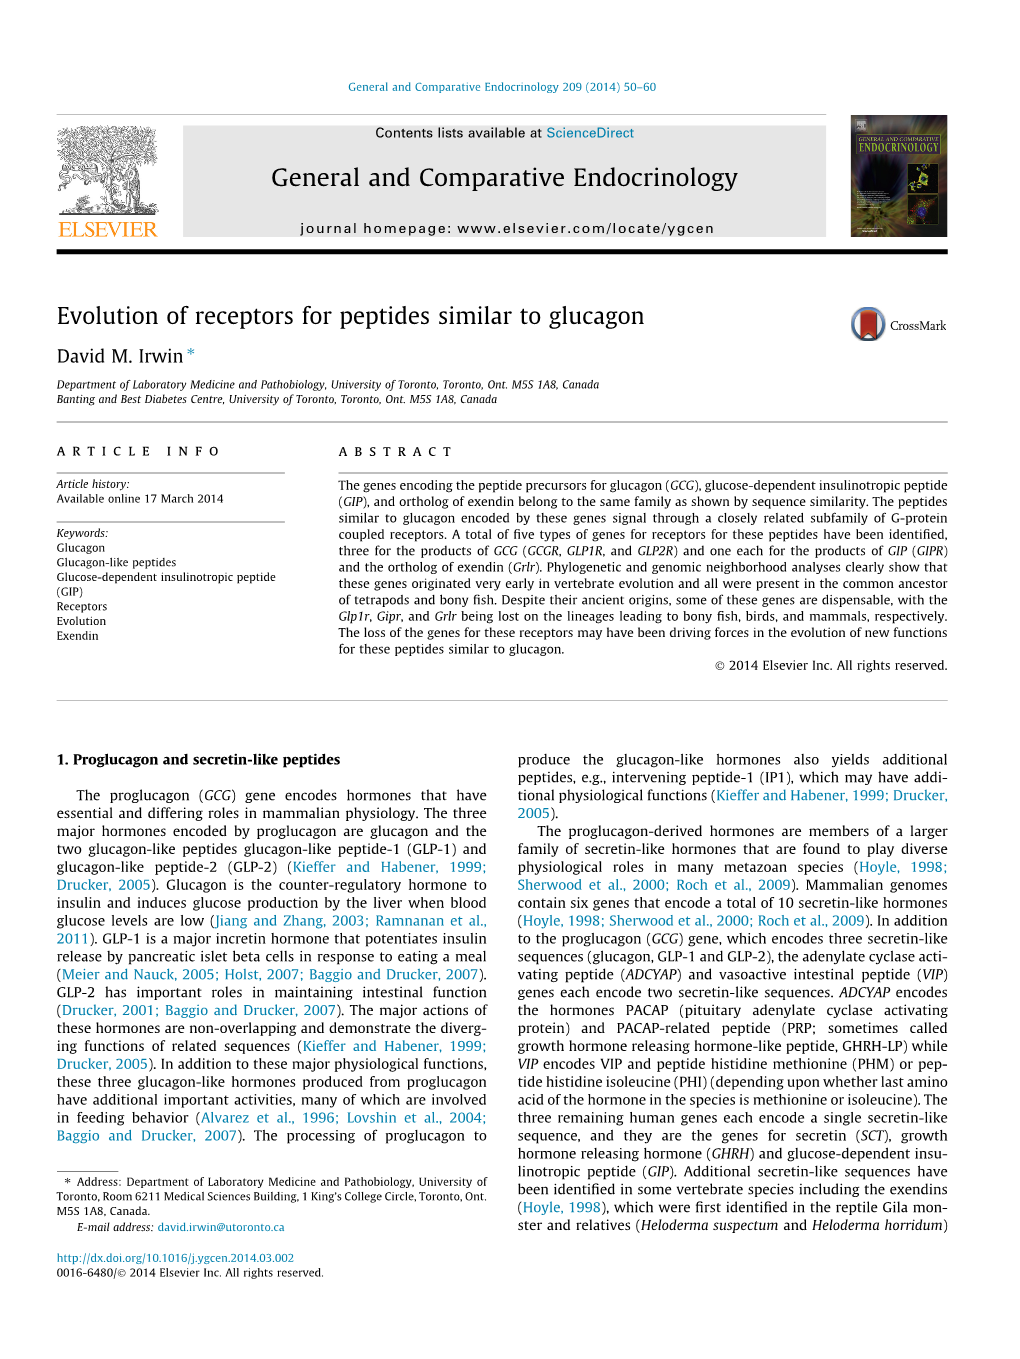 Evolution of Receptors for Peptides Similar to Glucagon ⇑ David M